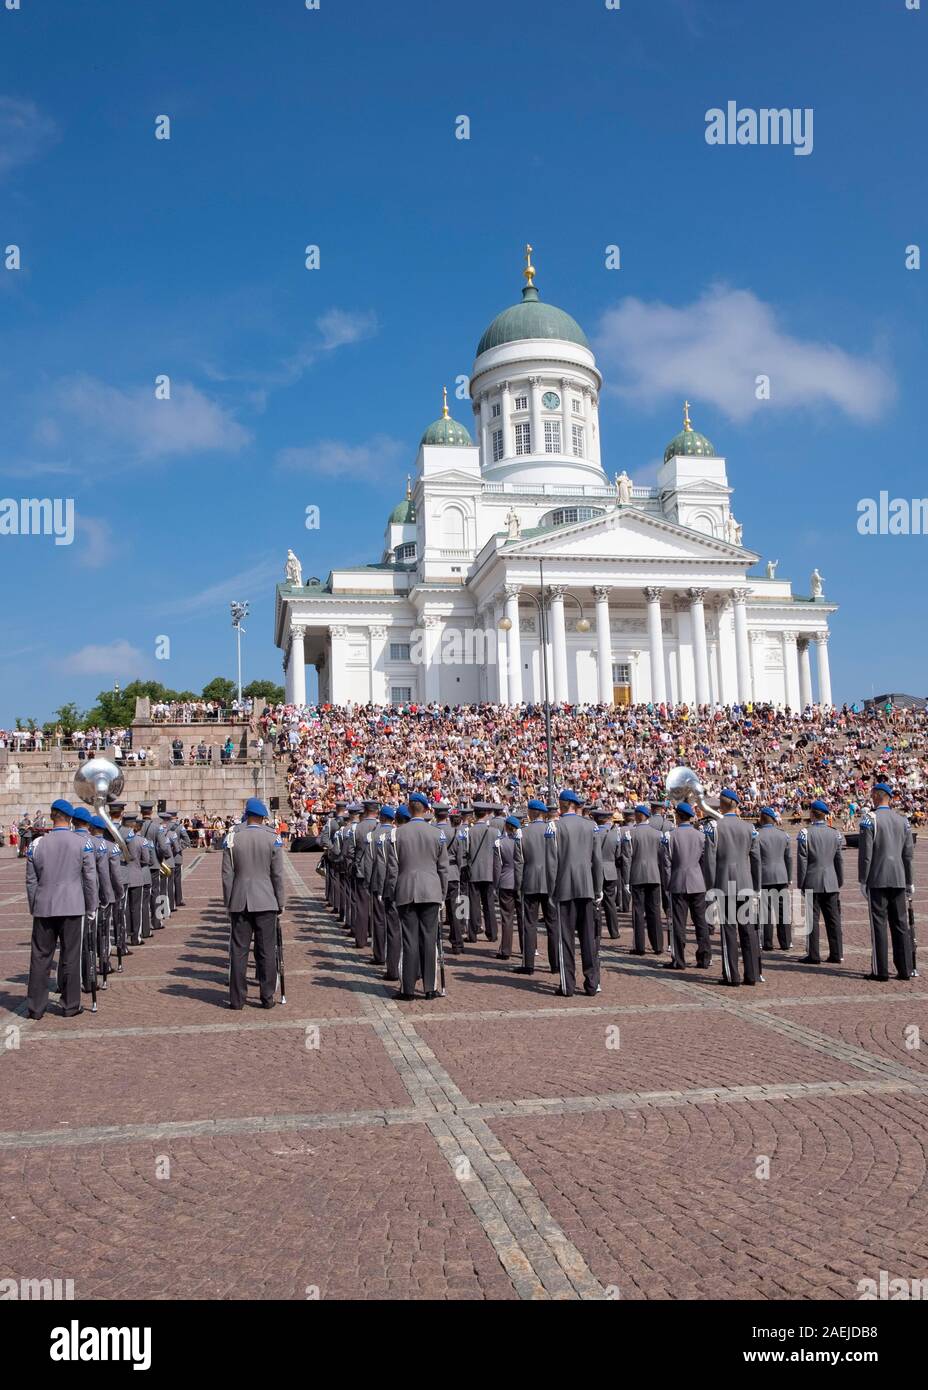 Vista su tutta la Piazza del Senato verso la banda militare e la gente seduta sui gradini della cattedrale di Helsinki, Helsinki, Finlandia e Scandinavia, Europa Foto Stock